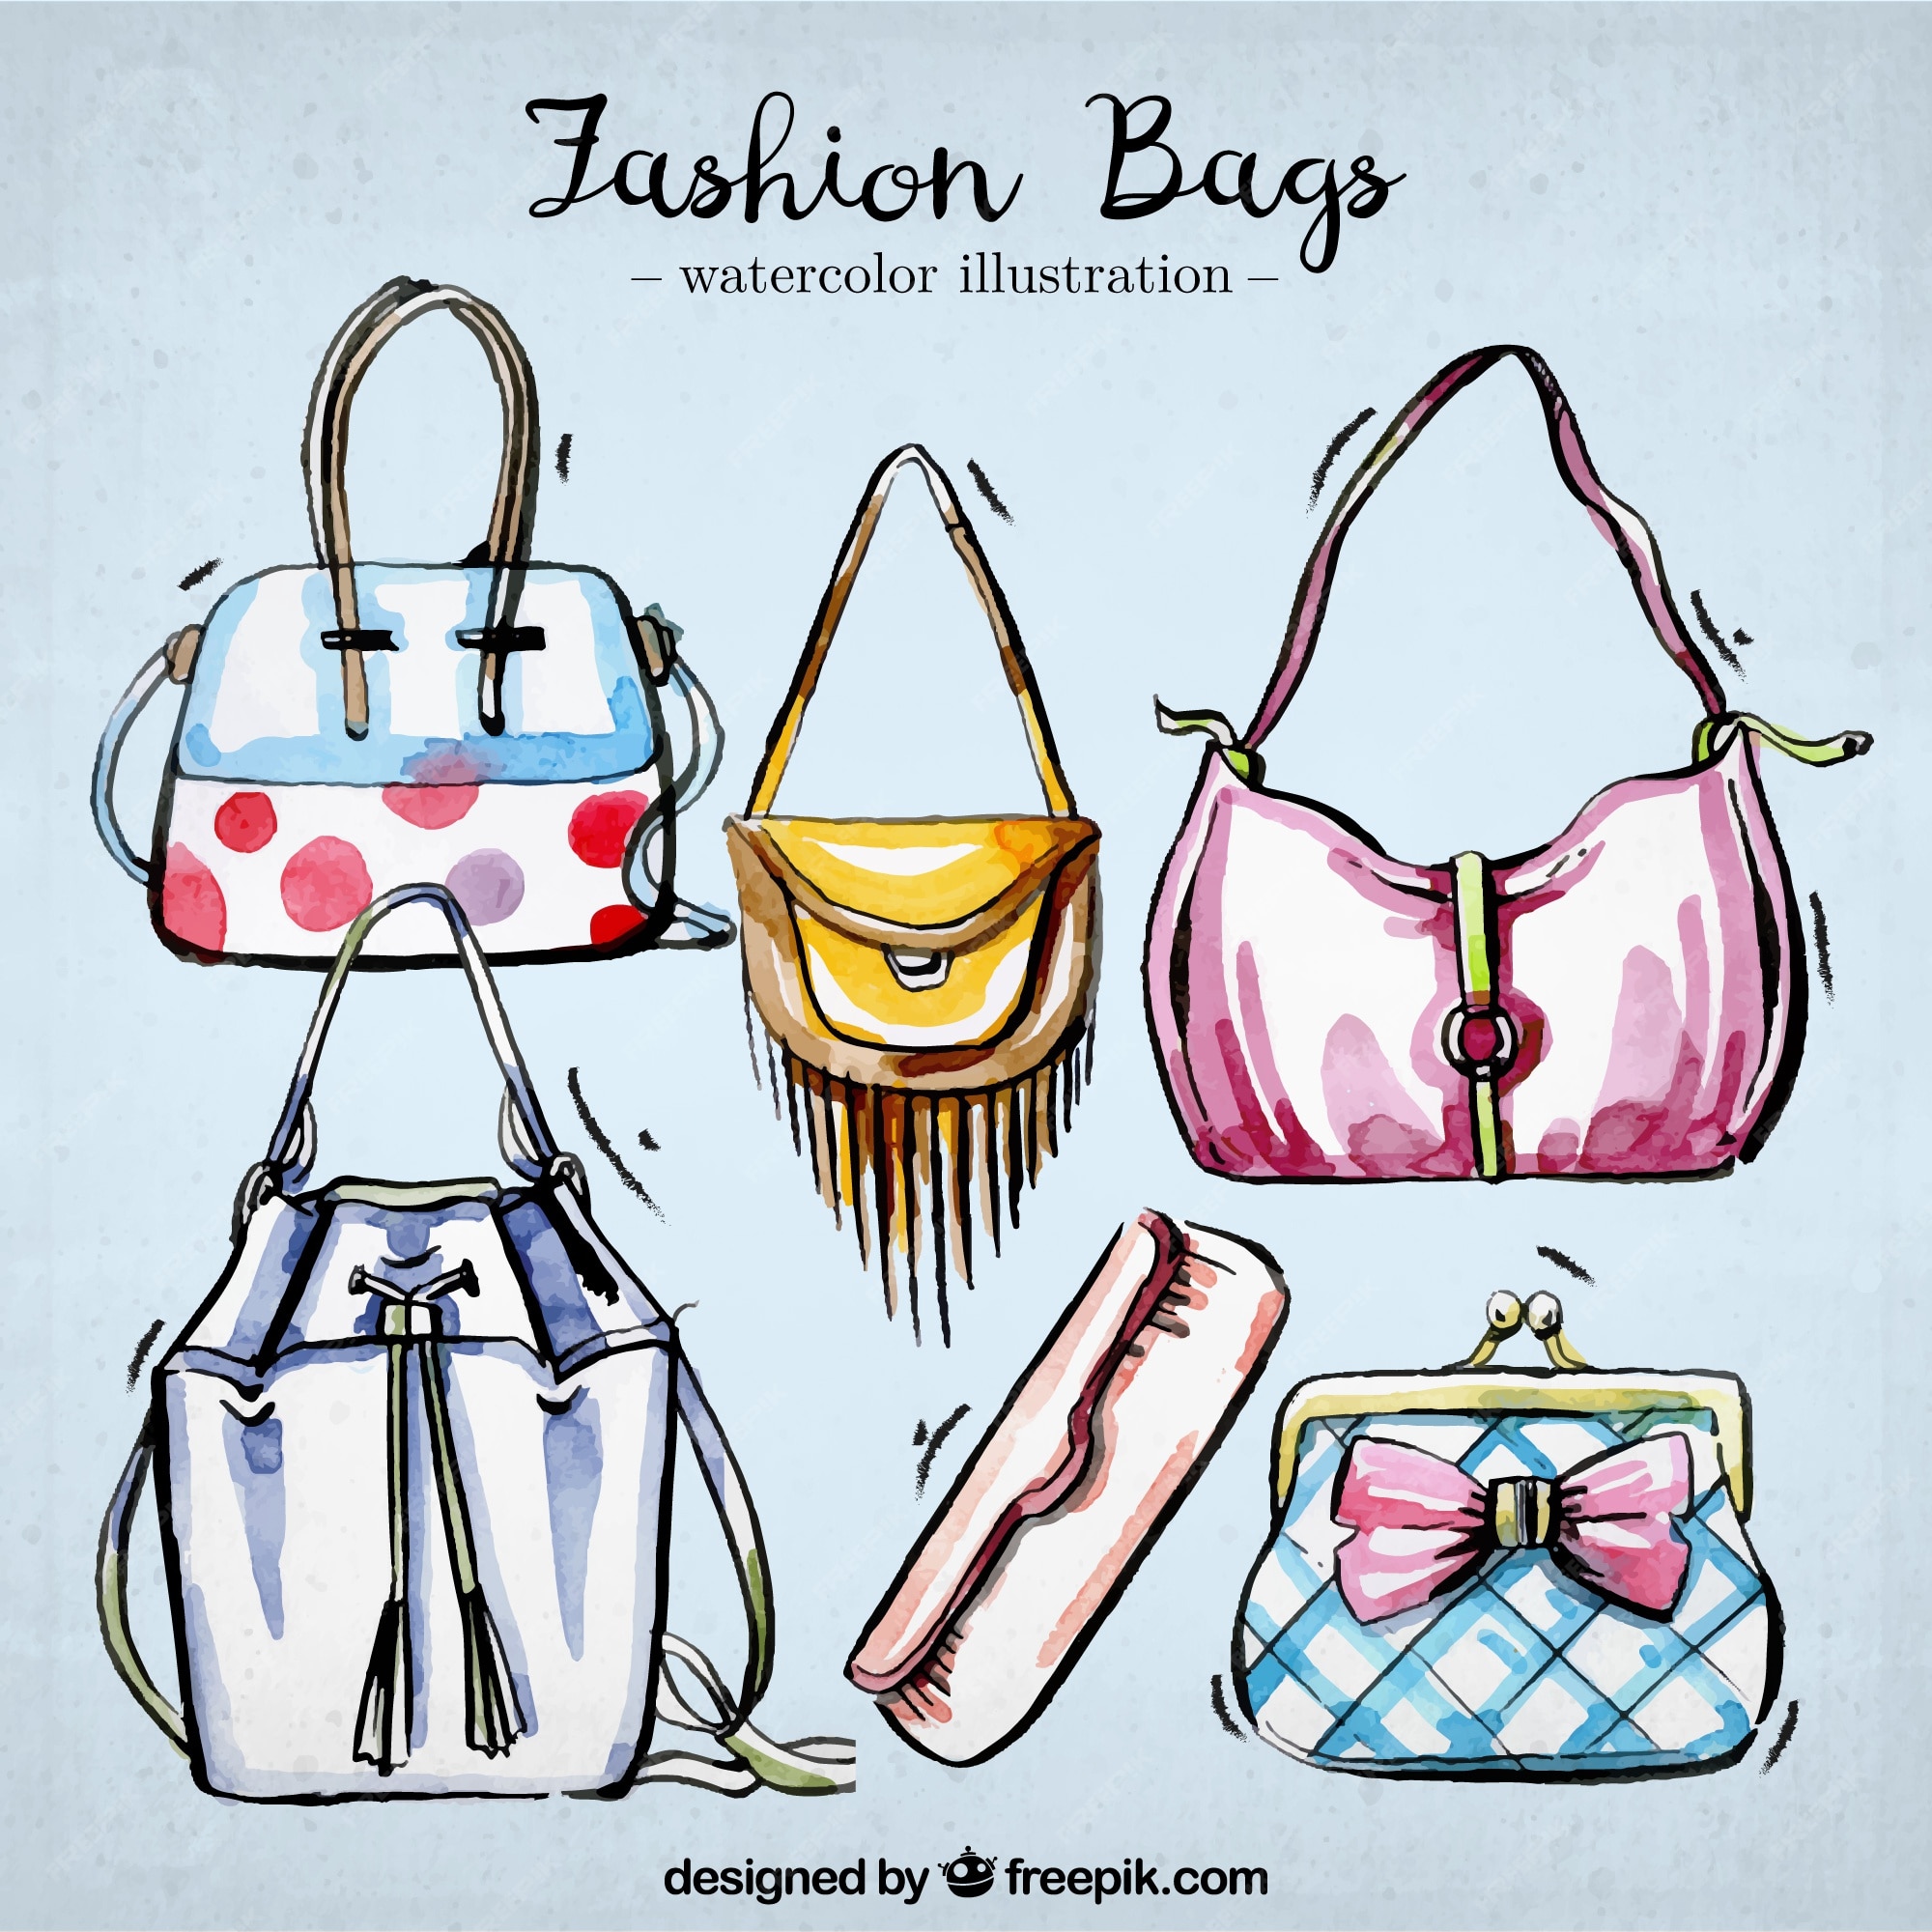 Premium PSD  Illustration depicting a sophisticated bag design